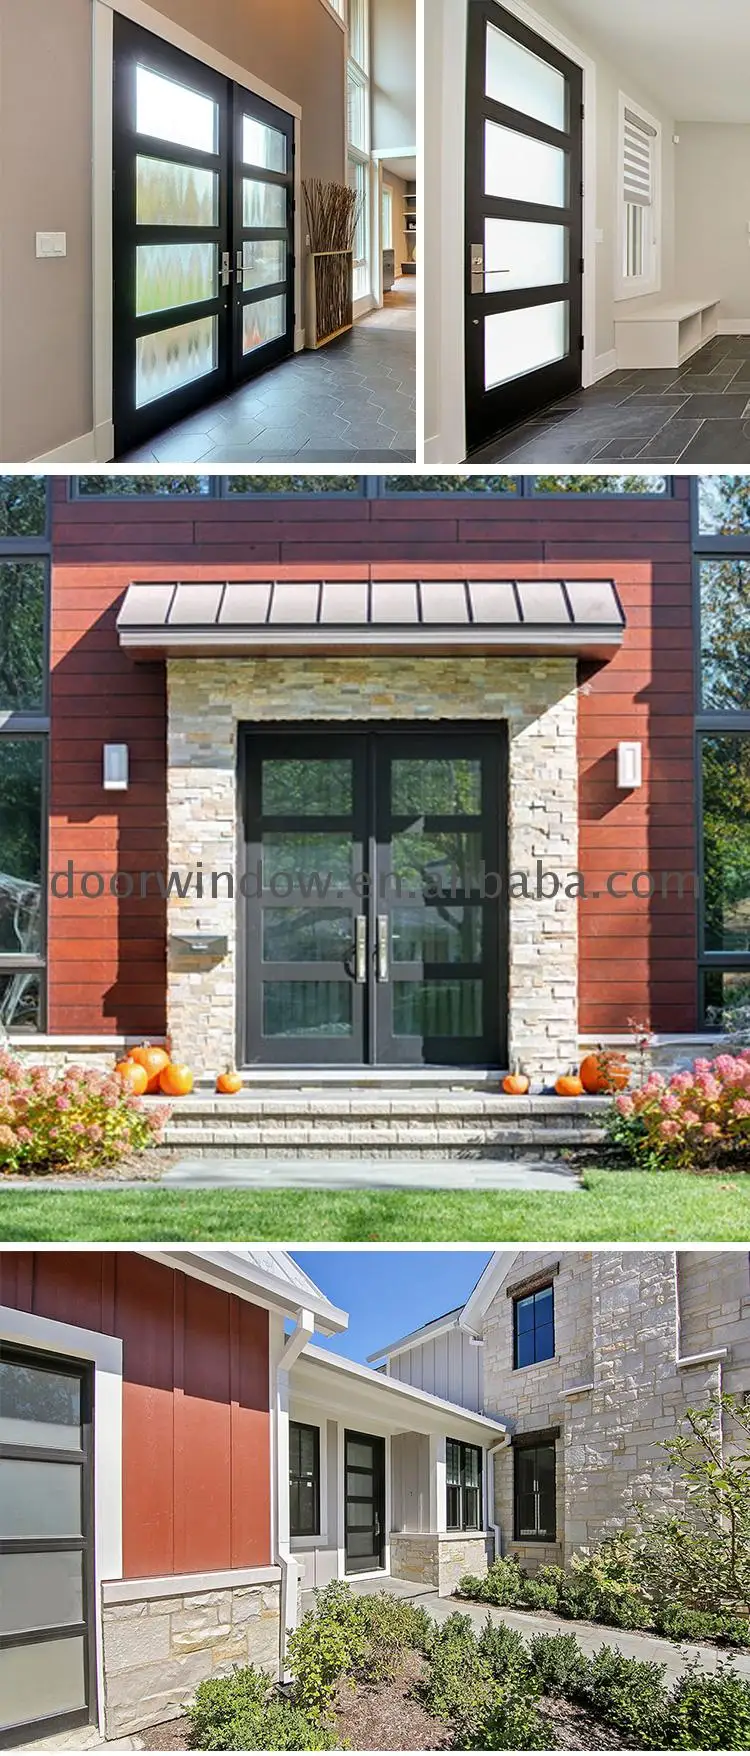 Hot Sale house main entrance door design doors for